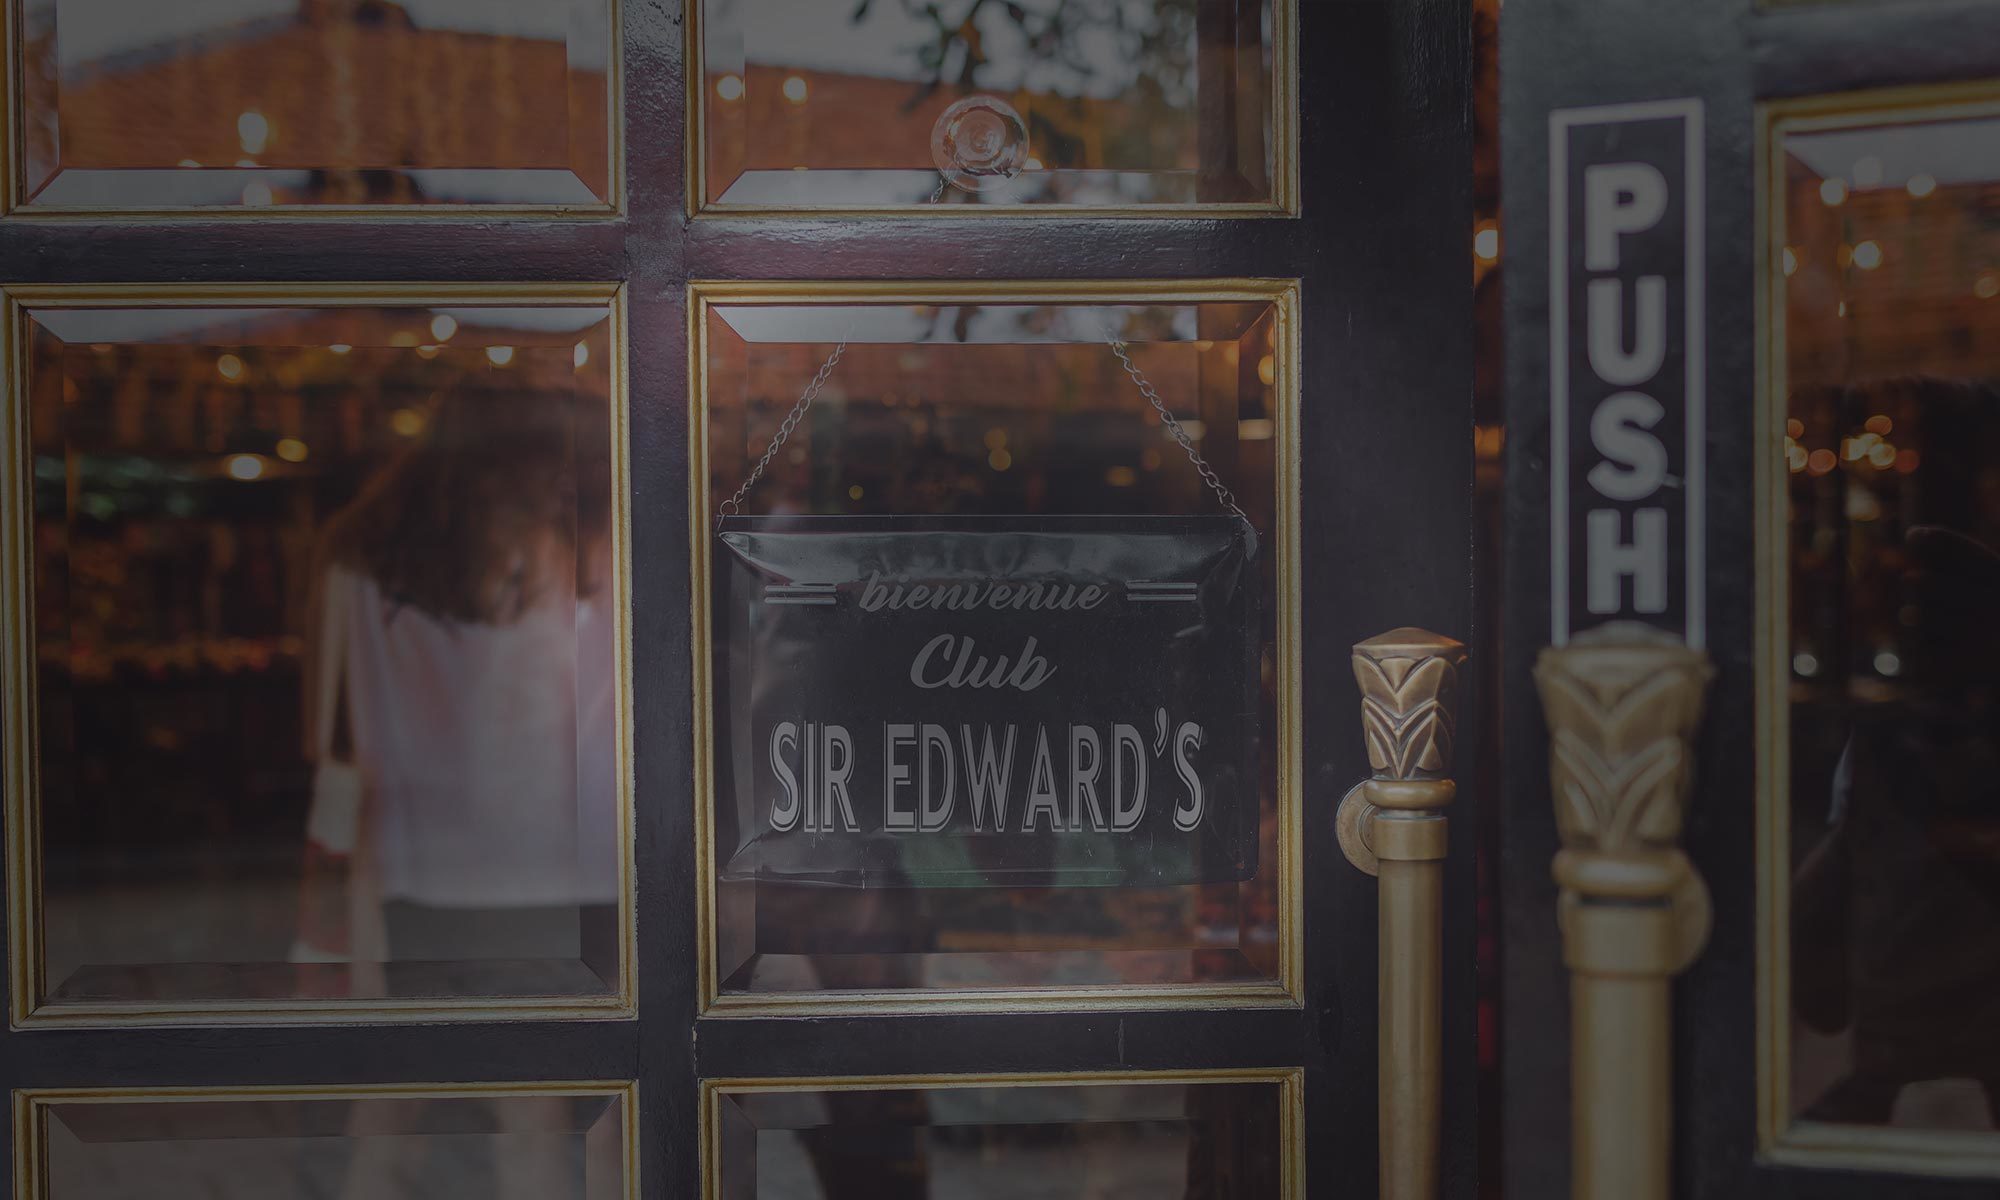 Le club Sir Edward's